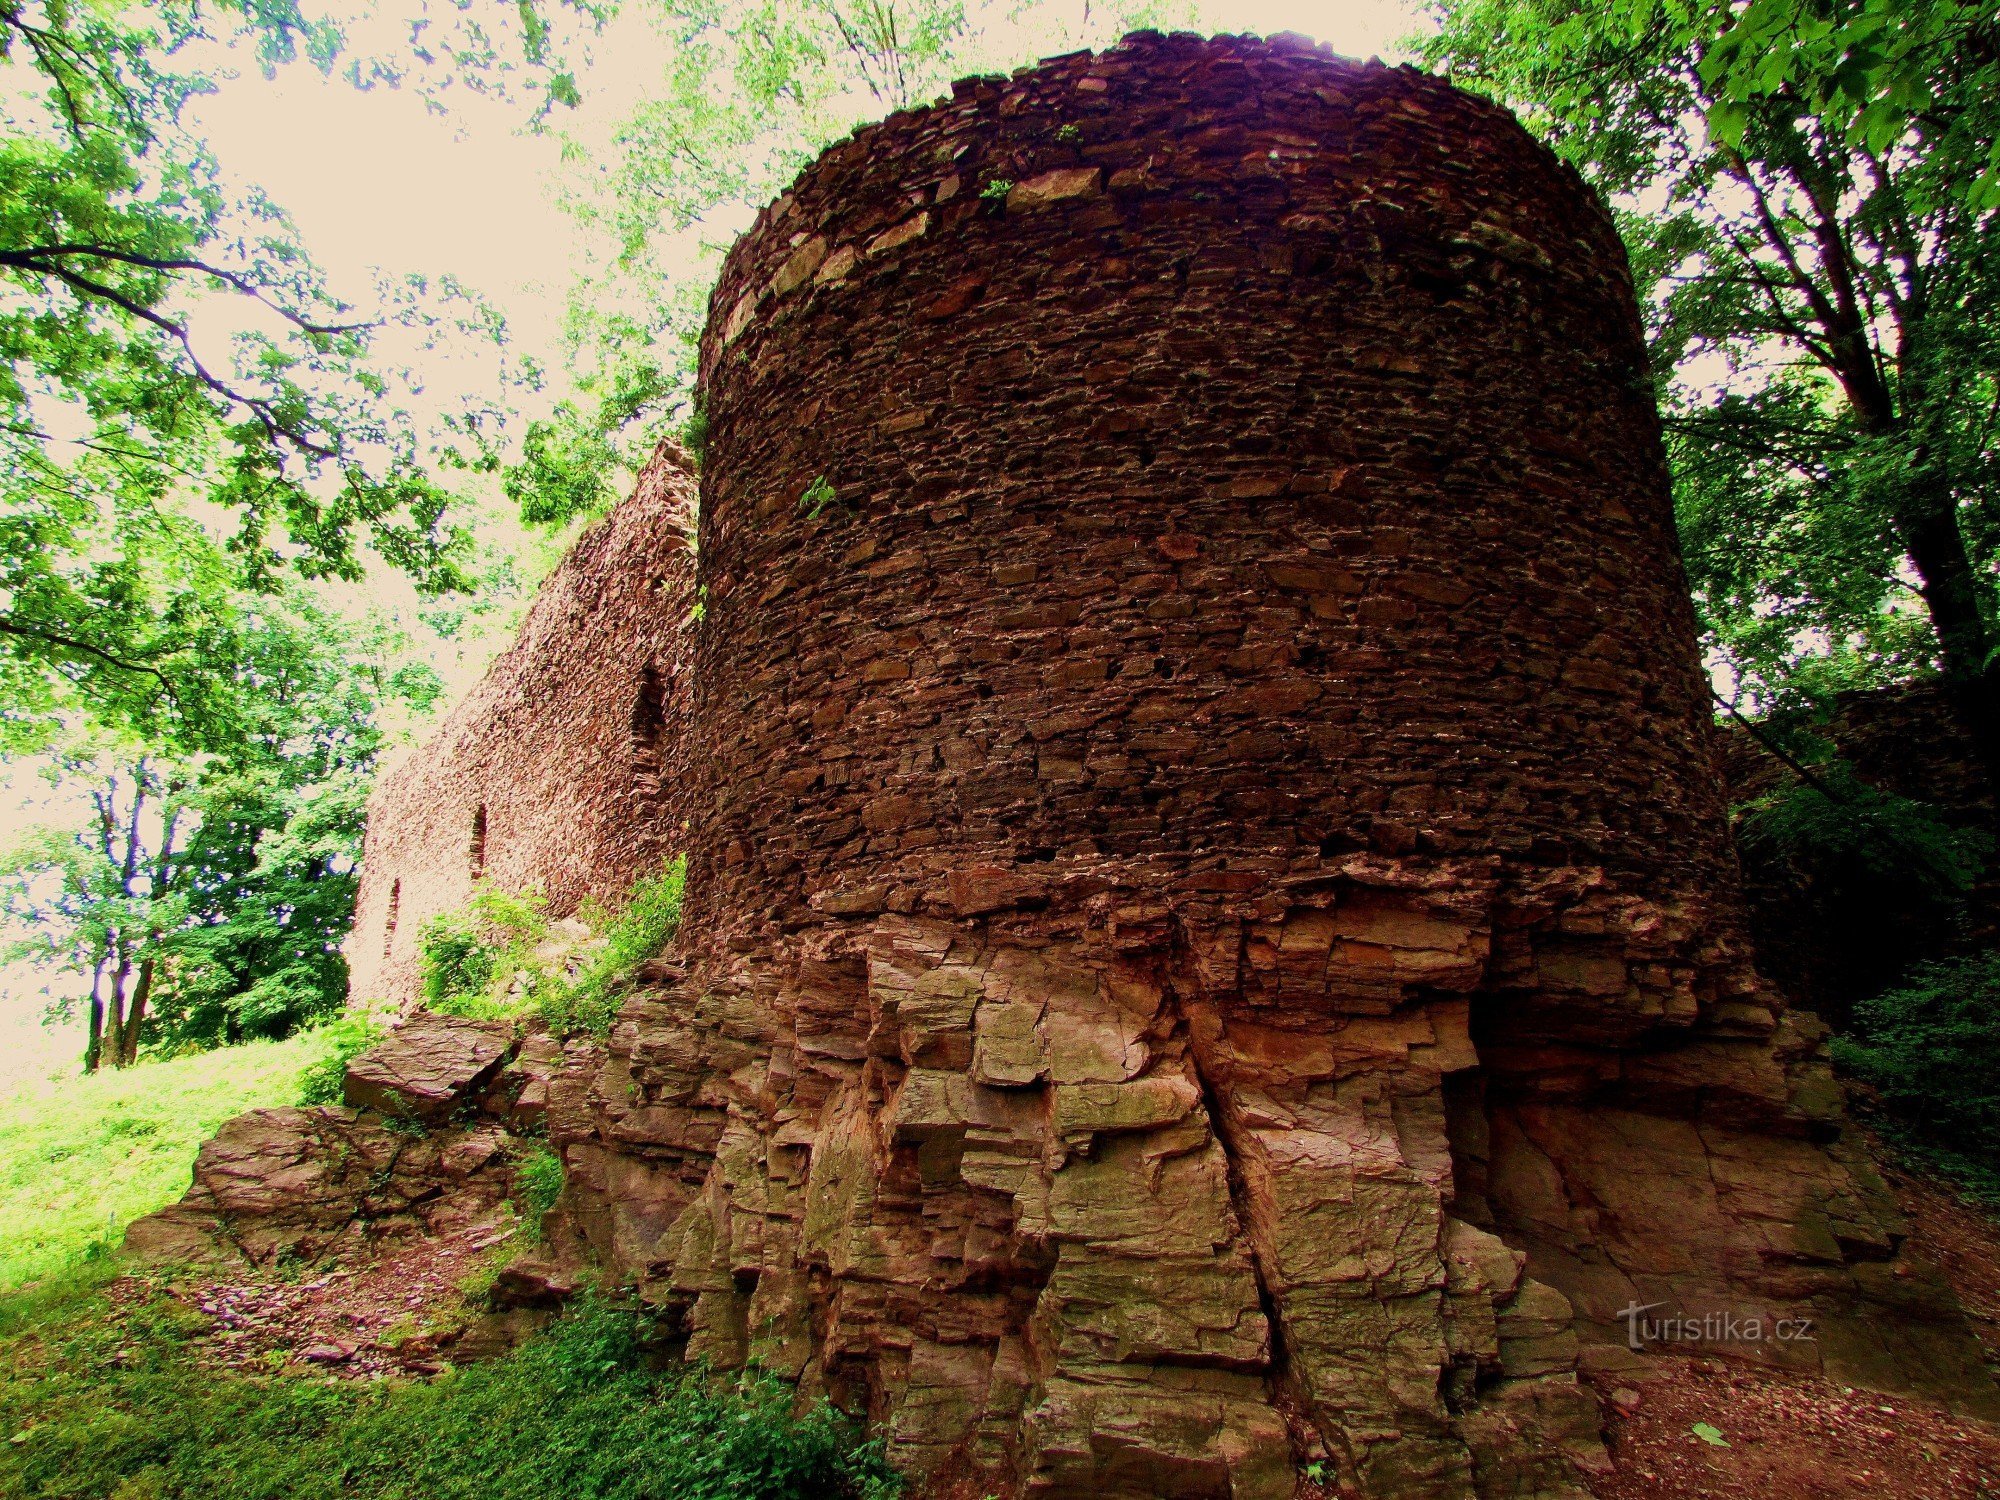 Dietro le rovine di Cimburk nella città di Trnávka